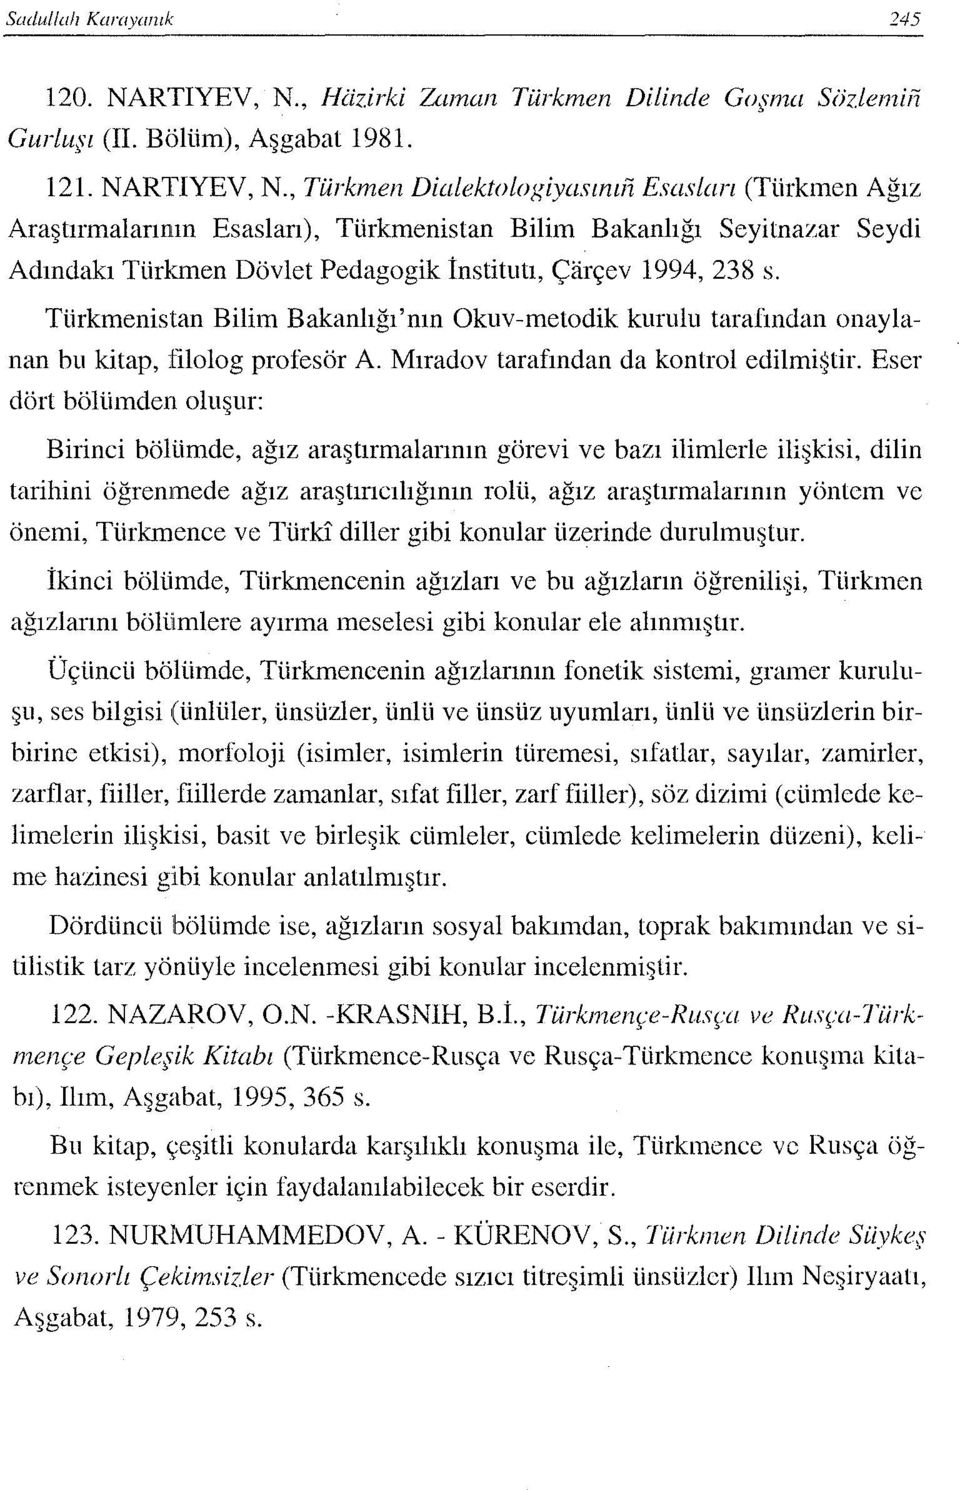 Türkmenistan Bilim Bakanlığı'nın Okuv-metodik kurulu taralindan onaylanan bu kitap, filolog profesör A. Mıradov tarafından da kontrol edilmiştir.